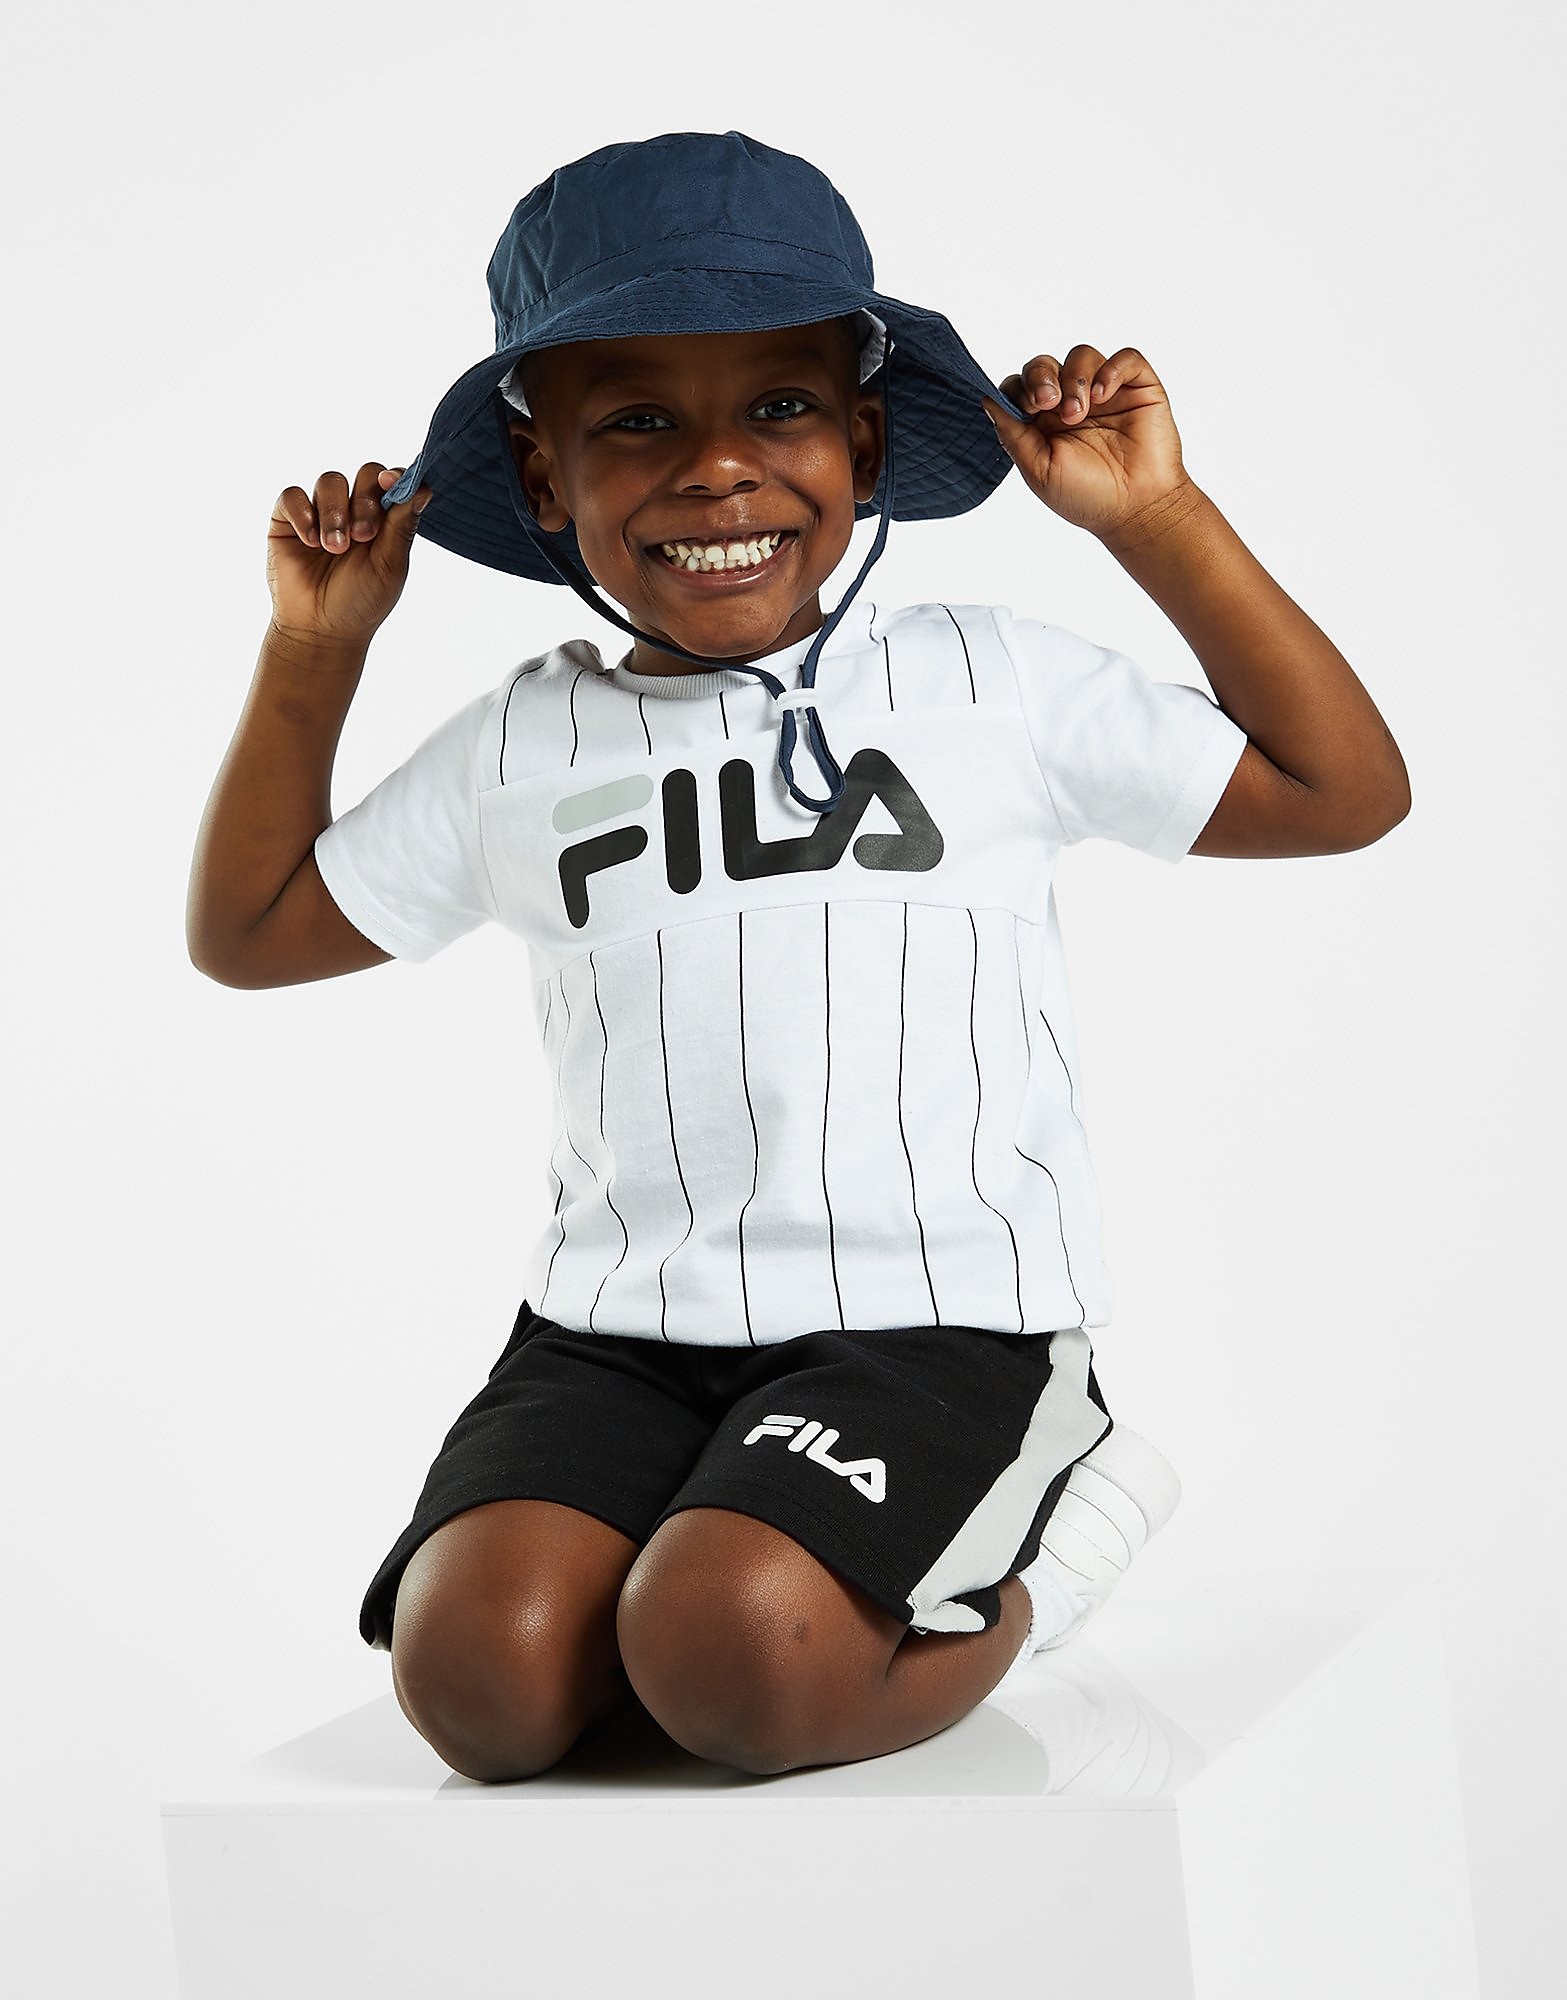 Fila T-shirt/Shorts Set Baby - Only at JD, Vit